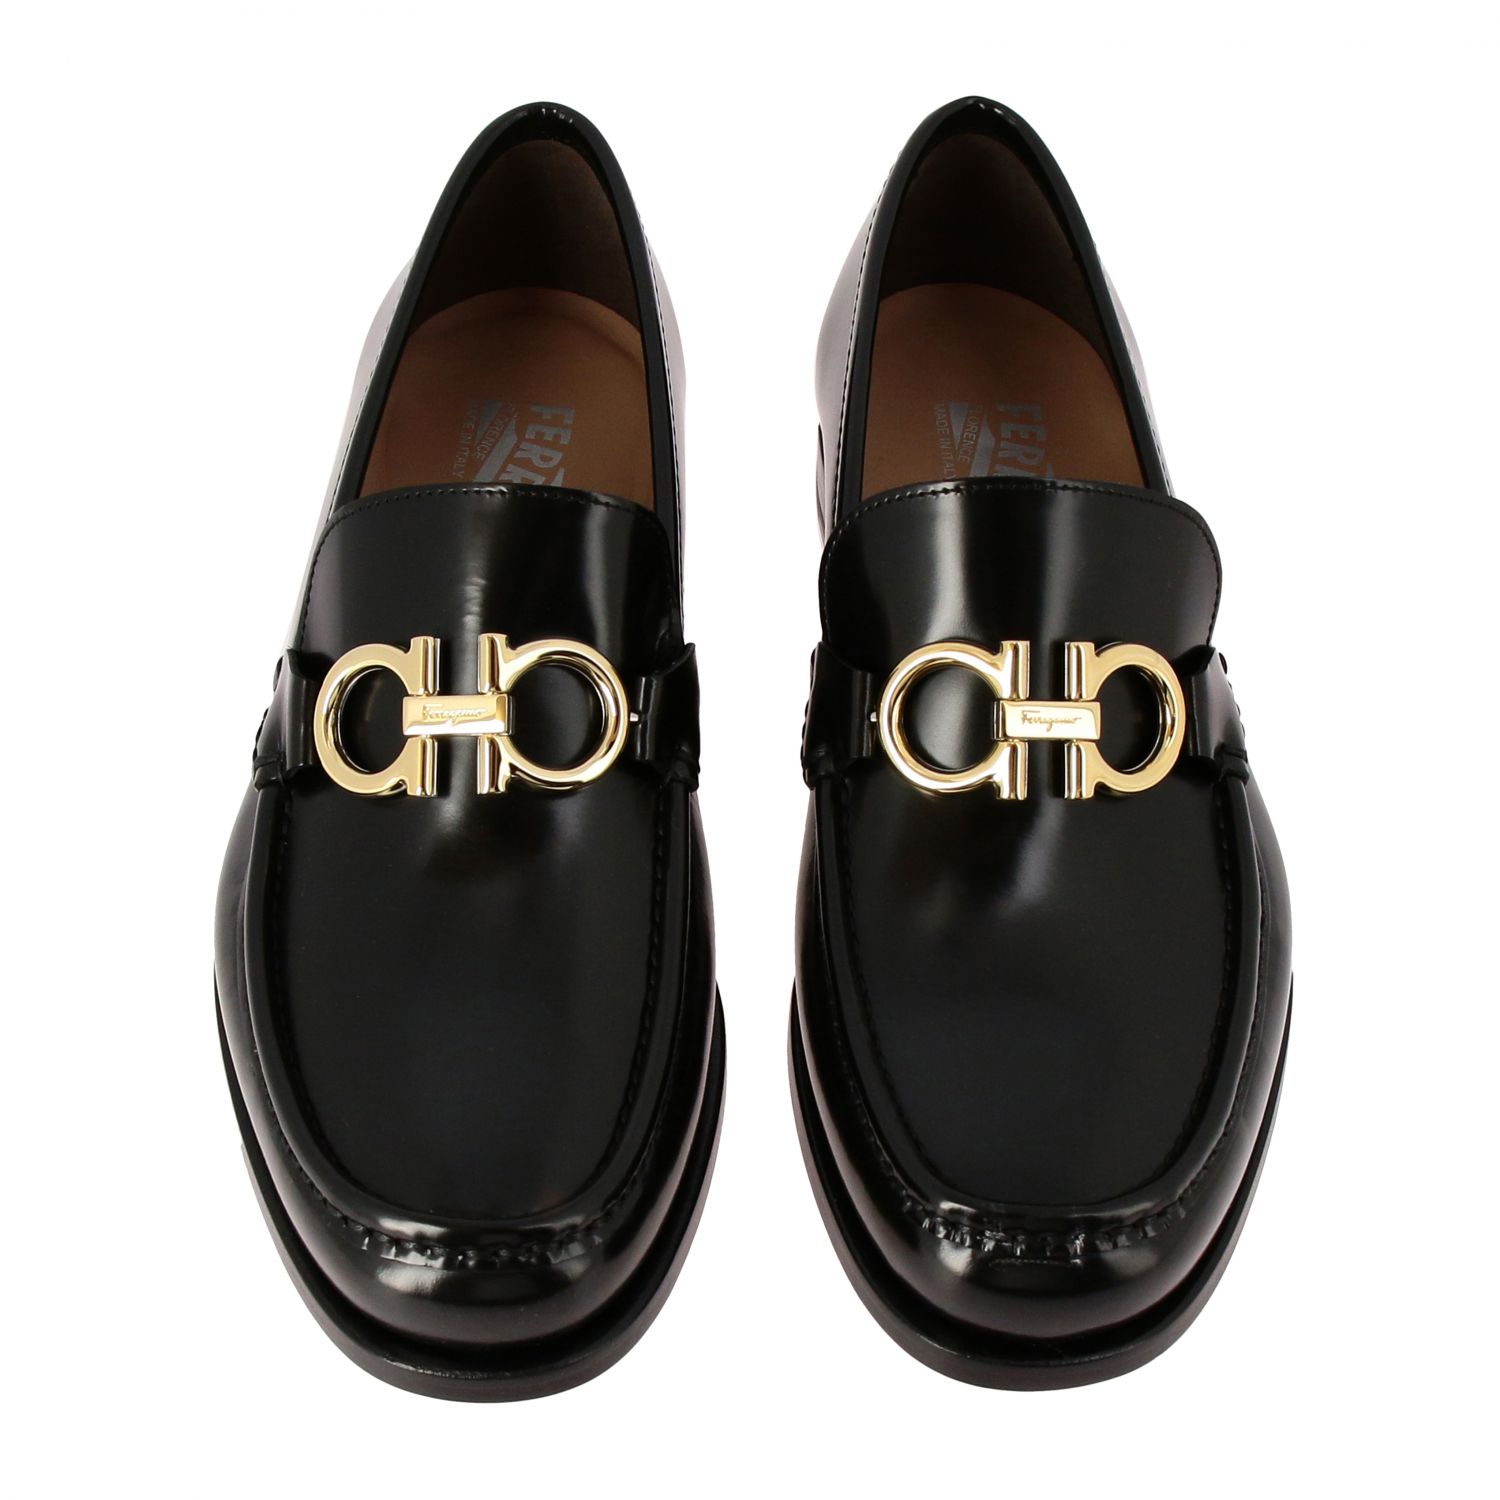 Salvatore Ferragamo Outlet: Shoes men | Loafers Salvatore Ferragamo Men ...